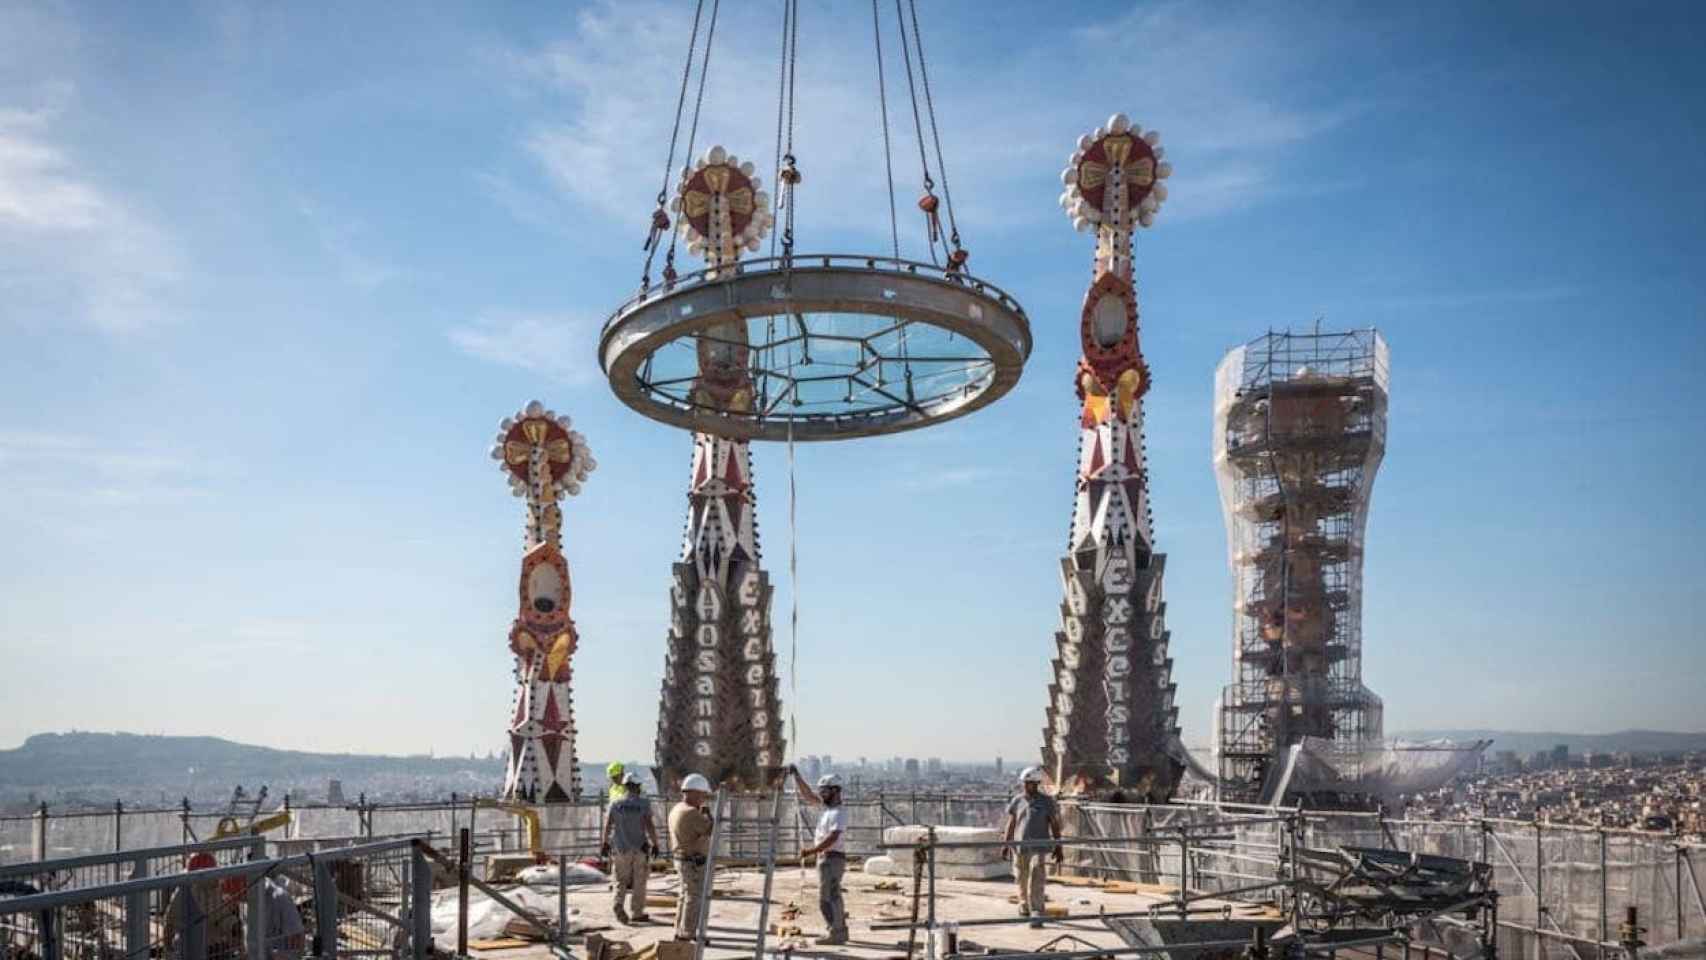 Imágenes de la Sagrada Família en construcción / SAGRADA FAMÍLIA